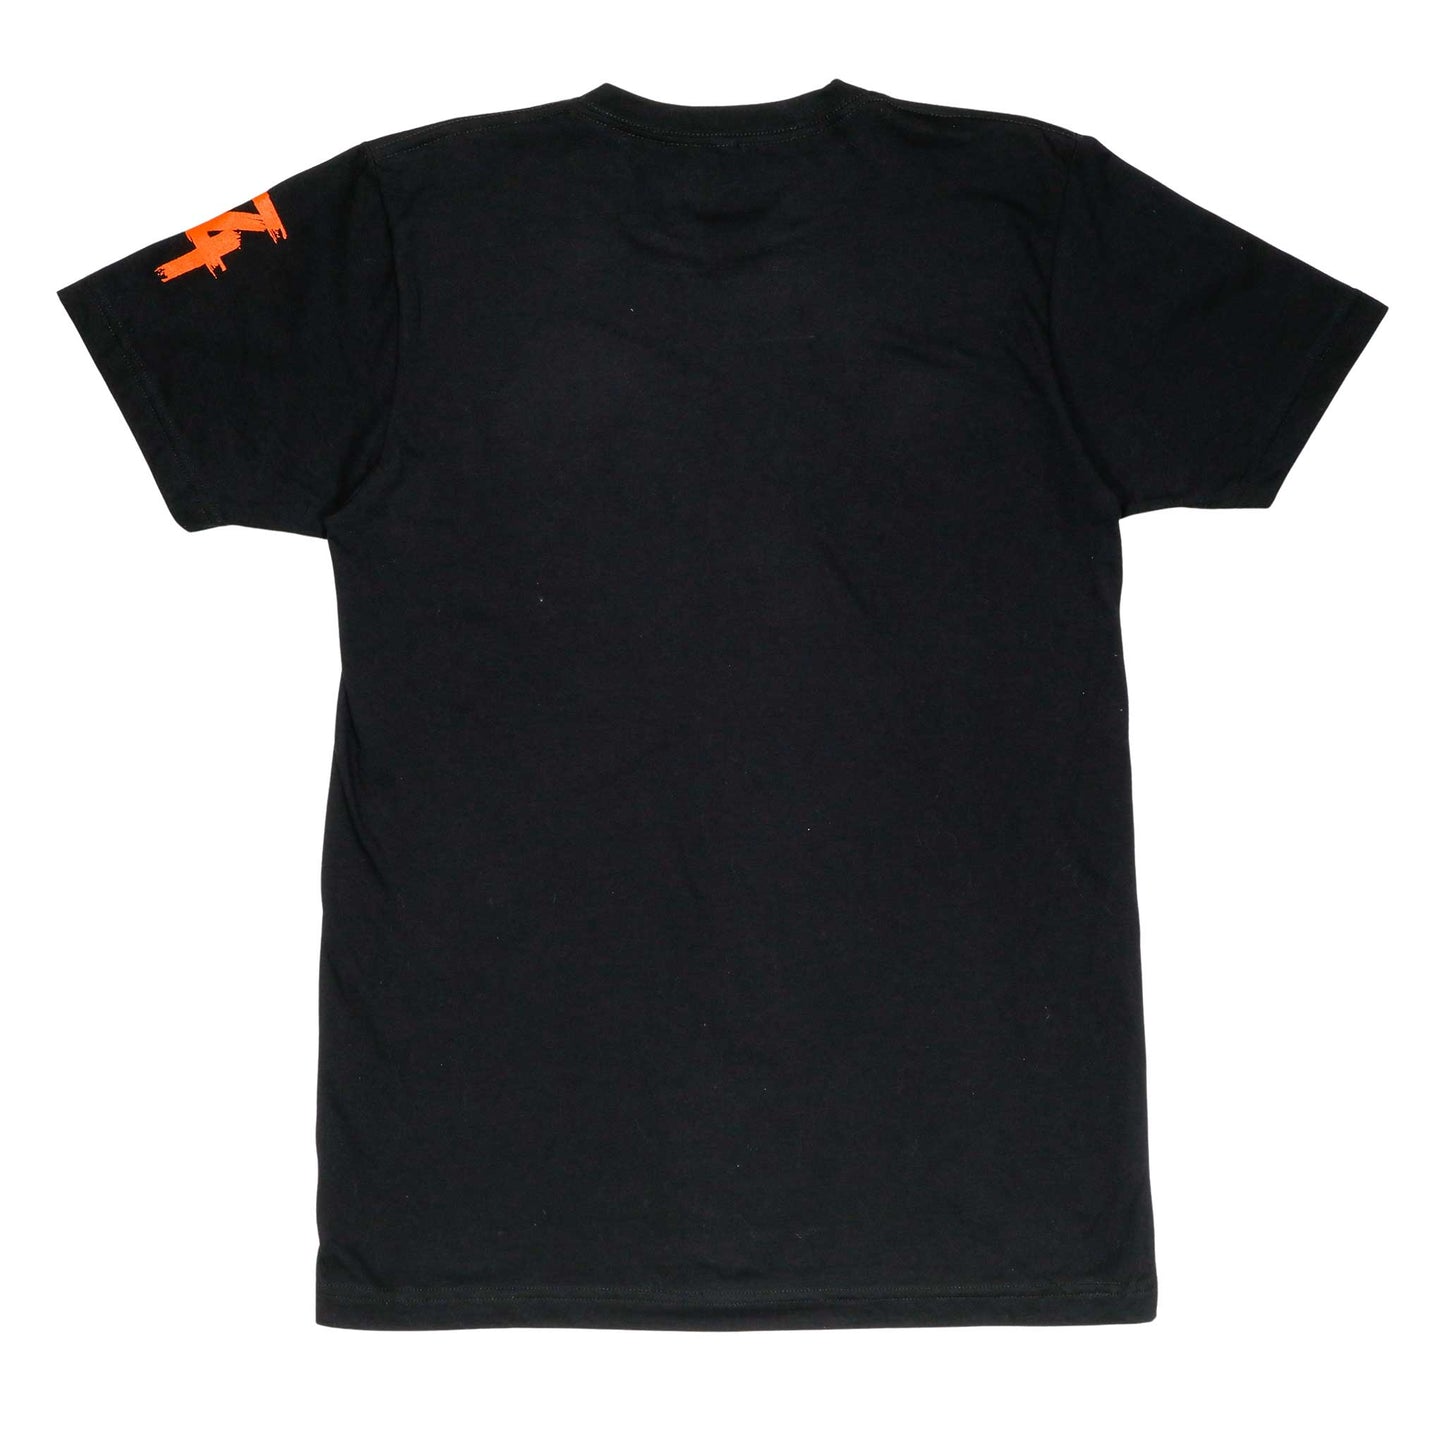 Men's - Heart Black and Orange Crew Neck T-Shirt-Vaughn de Heart